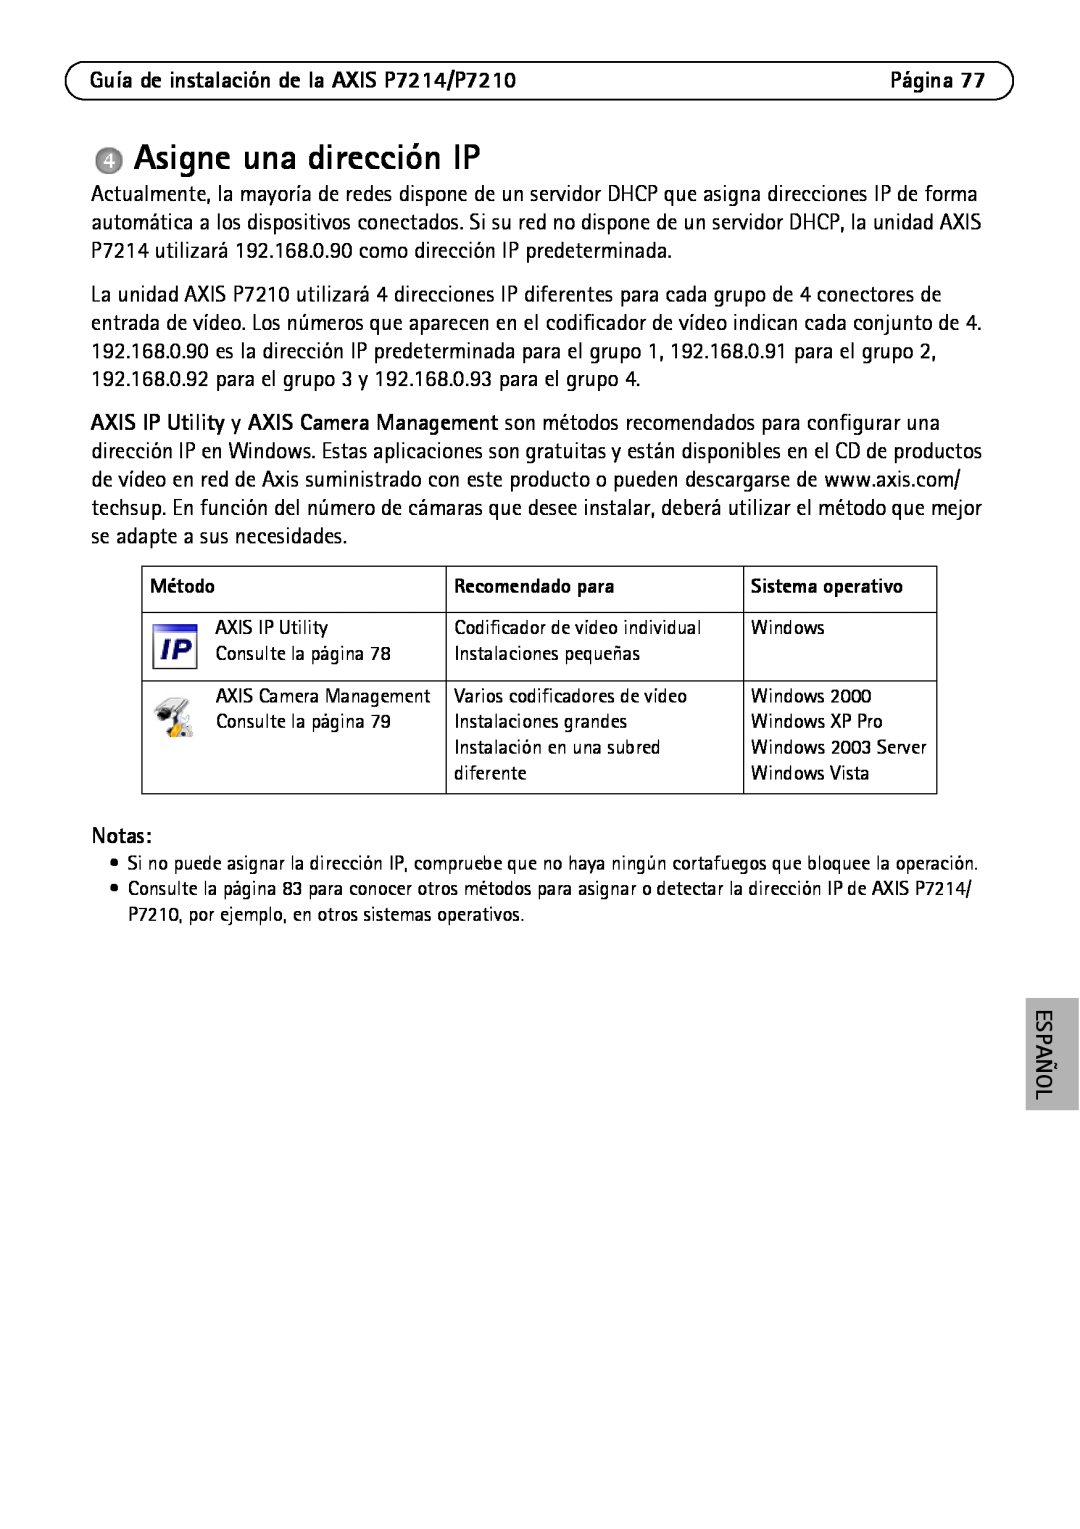 Axis Communications manual Asigne una dirección IP, Guía de instalación de la AXIS P7214/P7210, Notas, Español, Método 